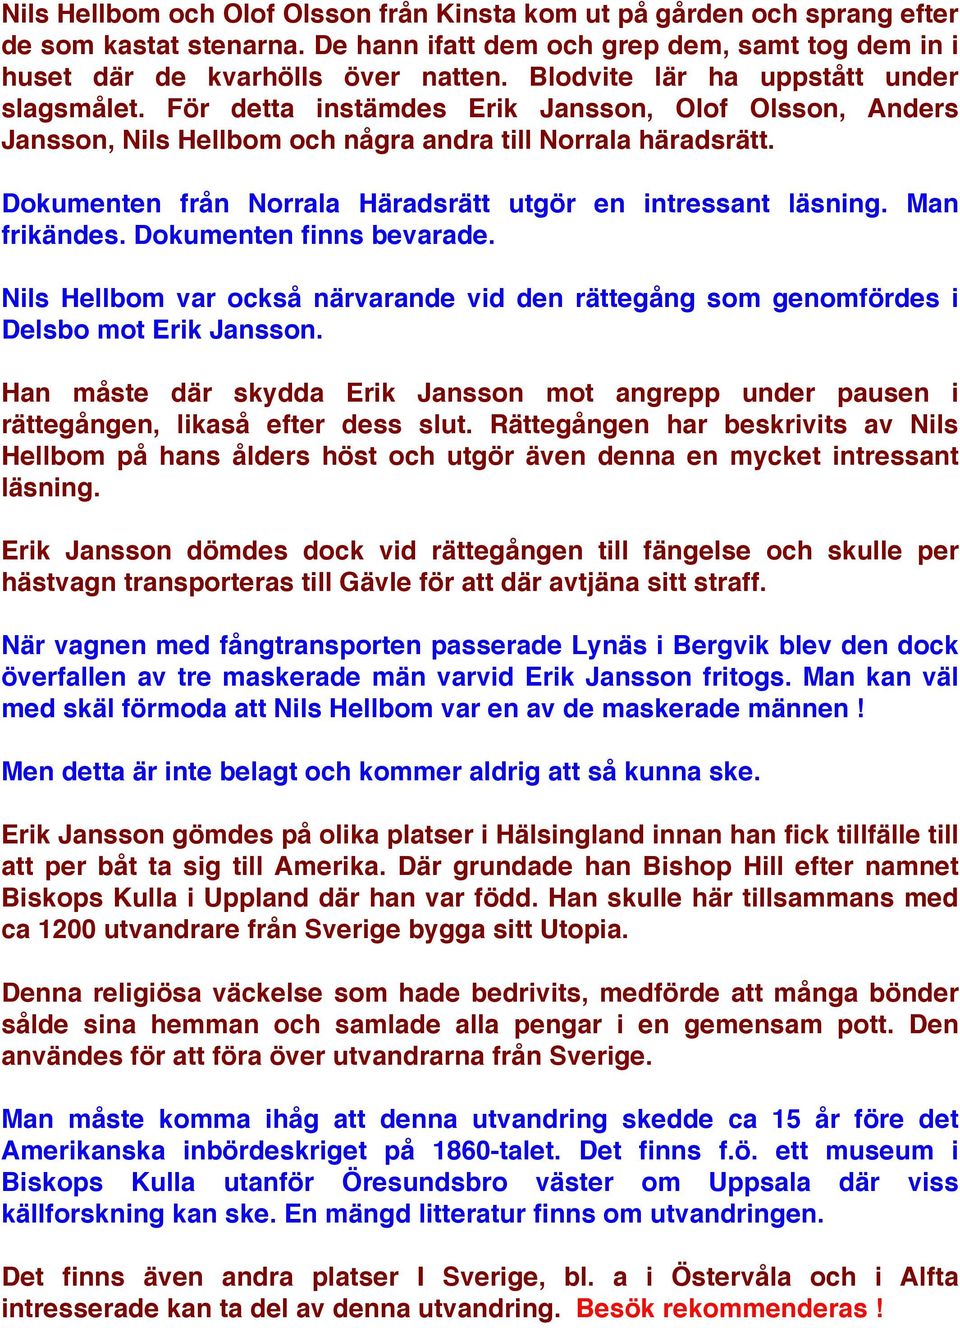 Dokumenten från Norrala Häradsrätt utgör en intressant läsning. Man frikändes. Dokumenten finns bevarade. Nils Hellbom var också närvarande vid den rättegång som genomfördes i Delsbo mot Erik Jansson.